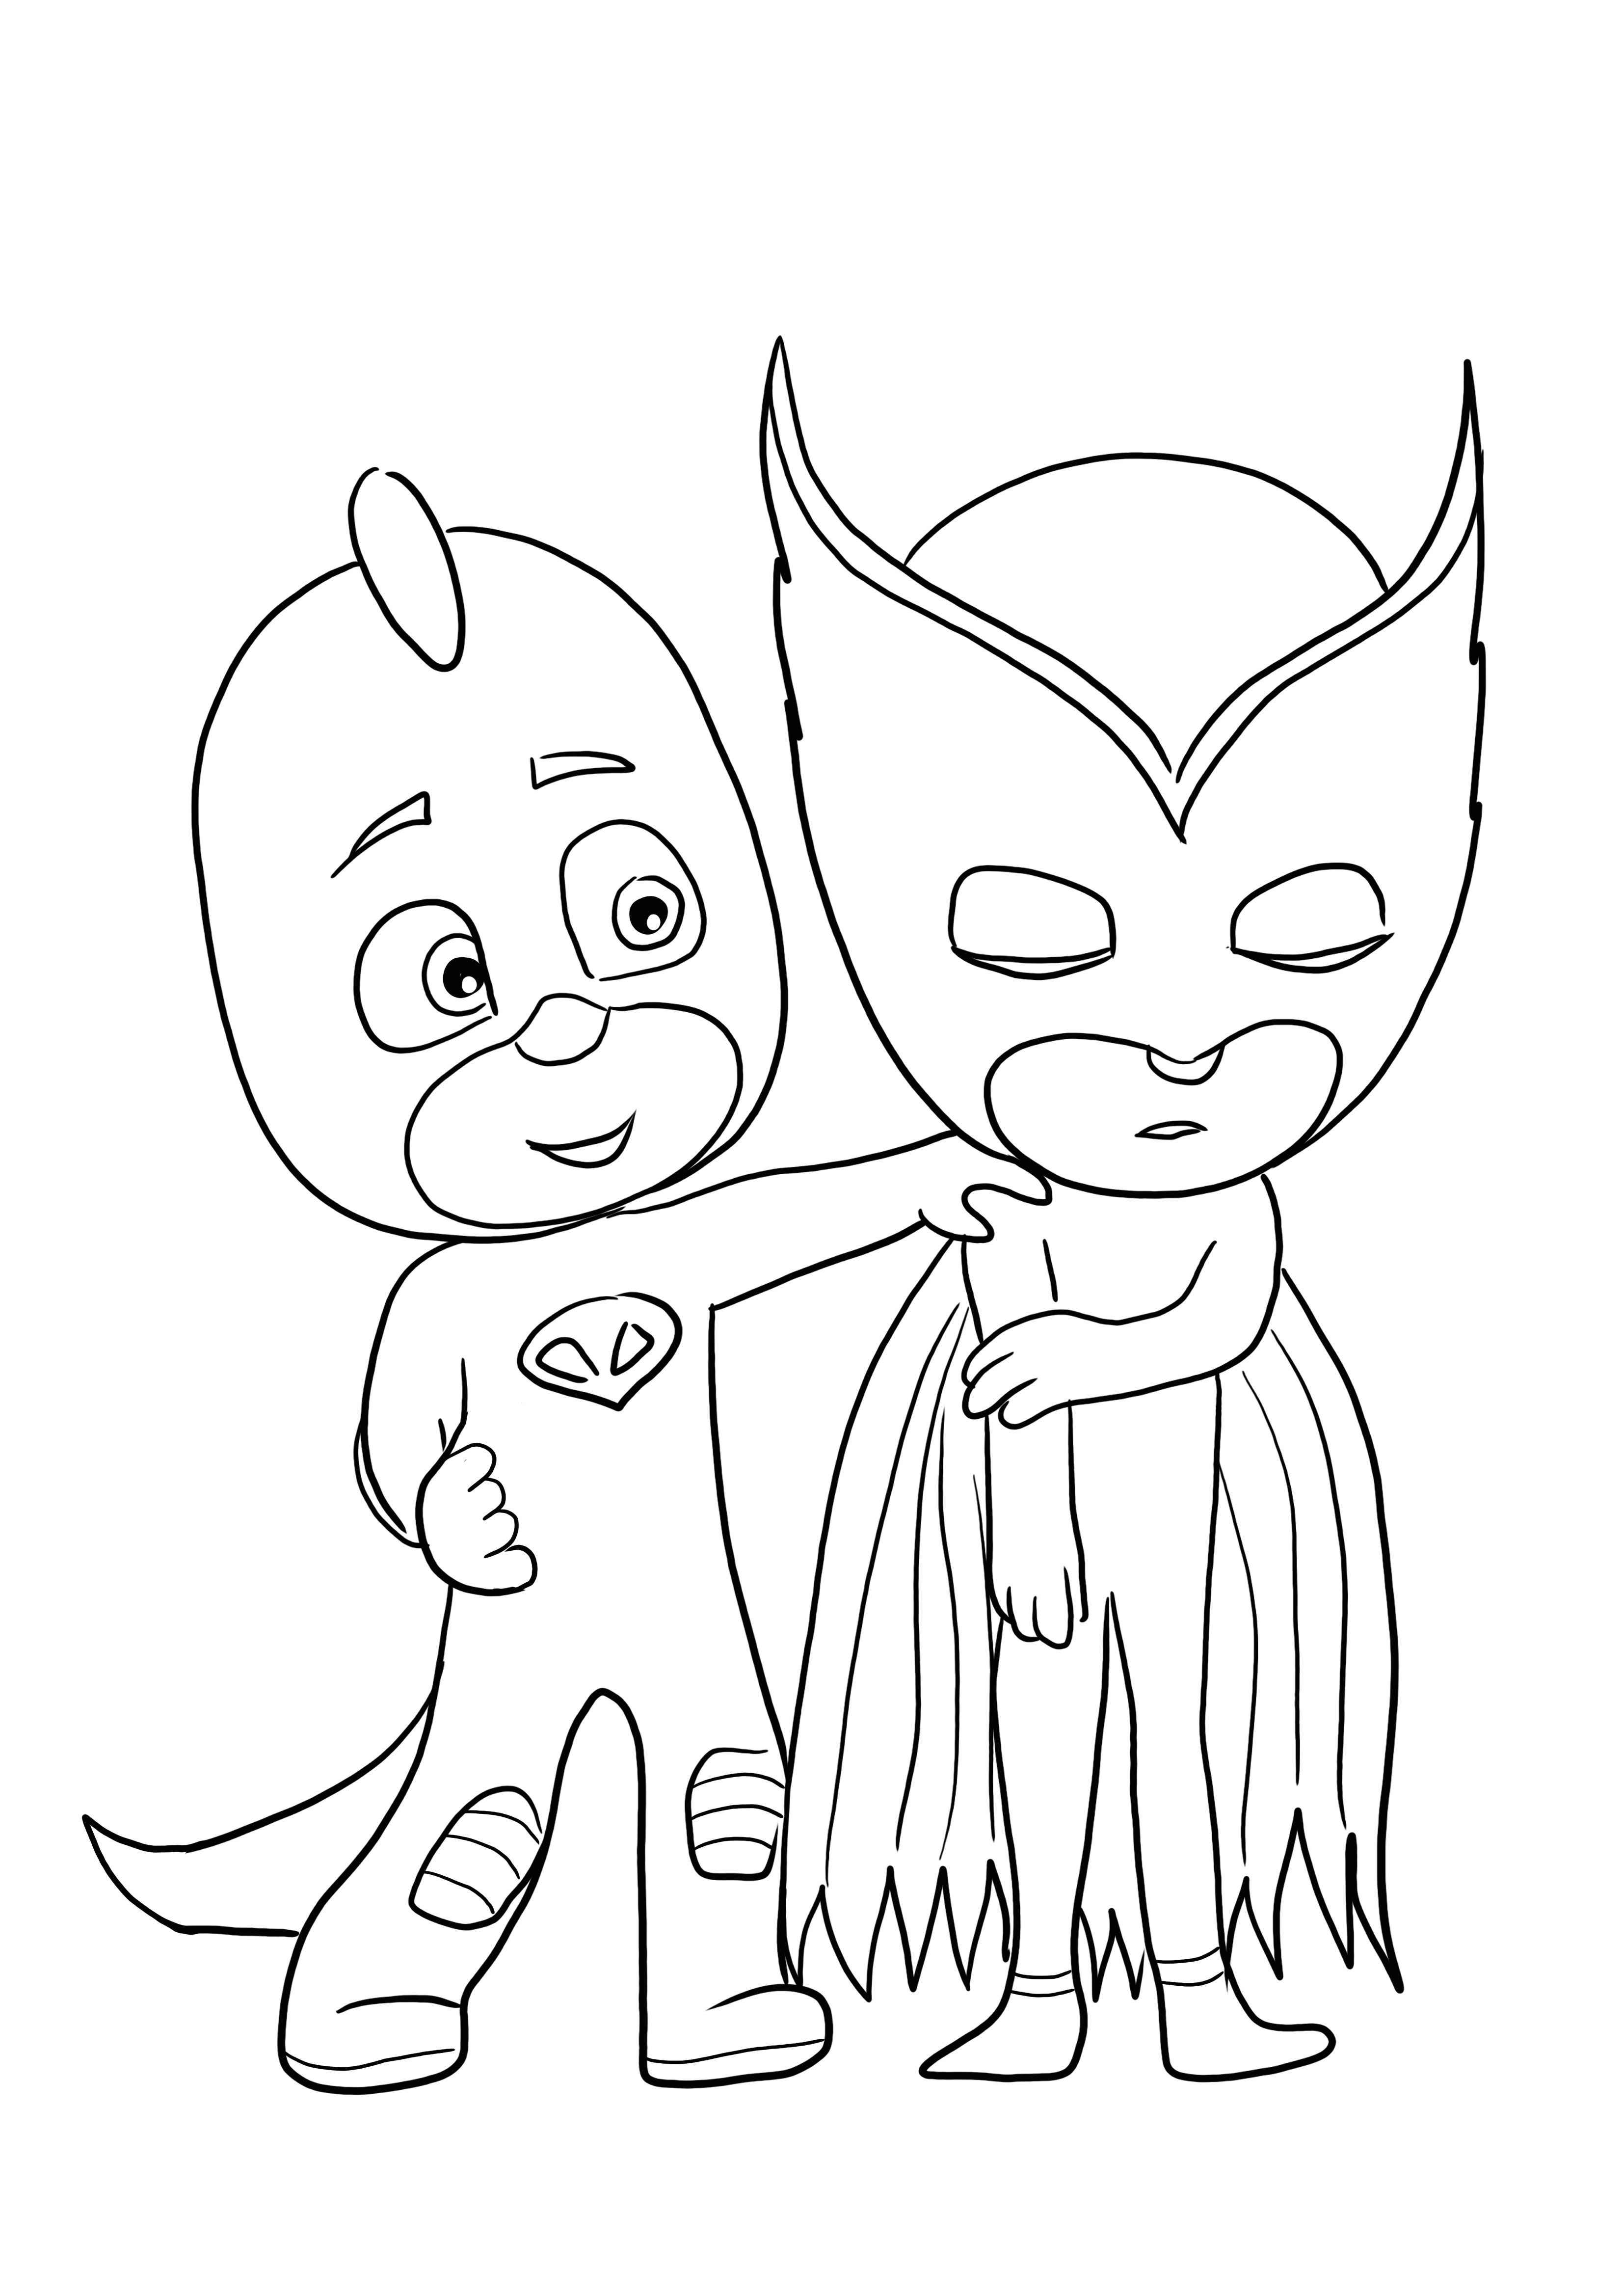 PJ Masks Heroes download gratuito e super foglio da colorare